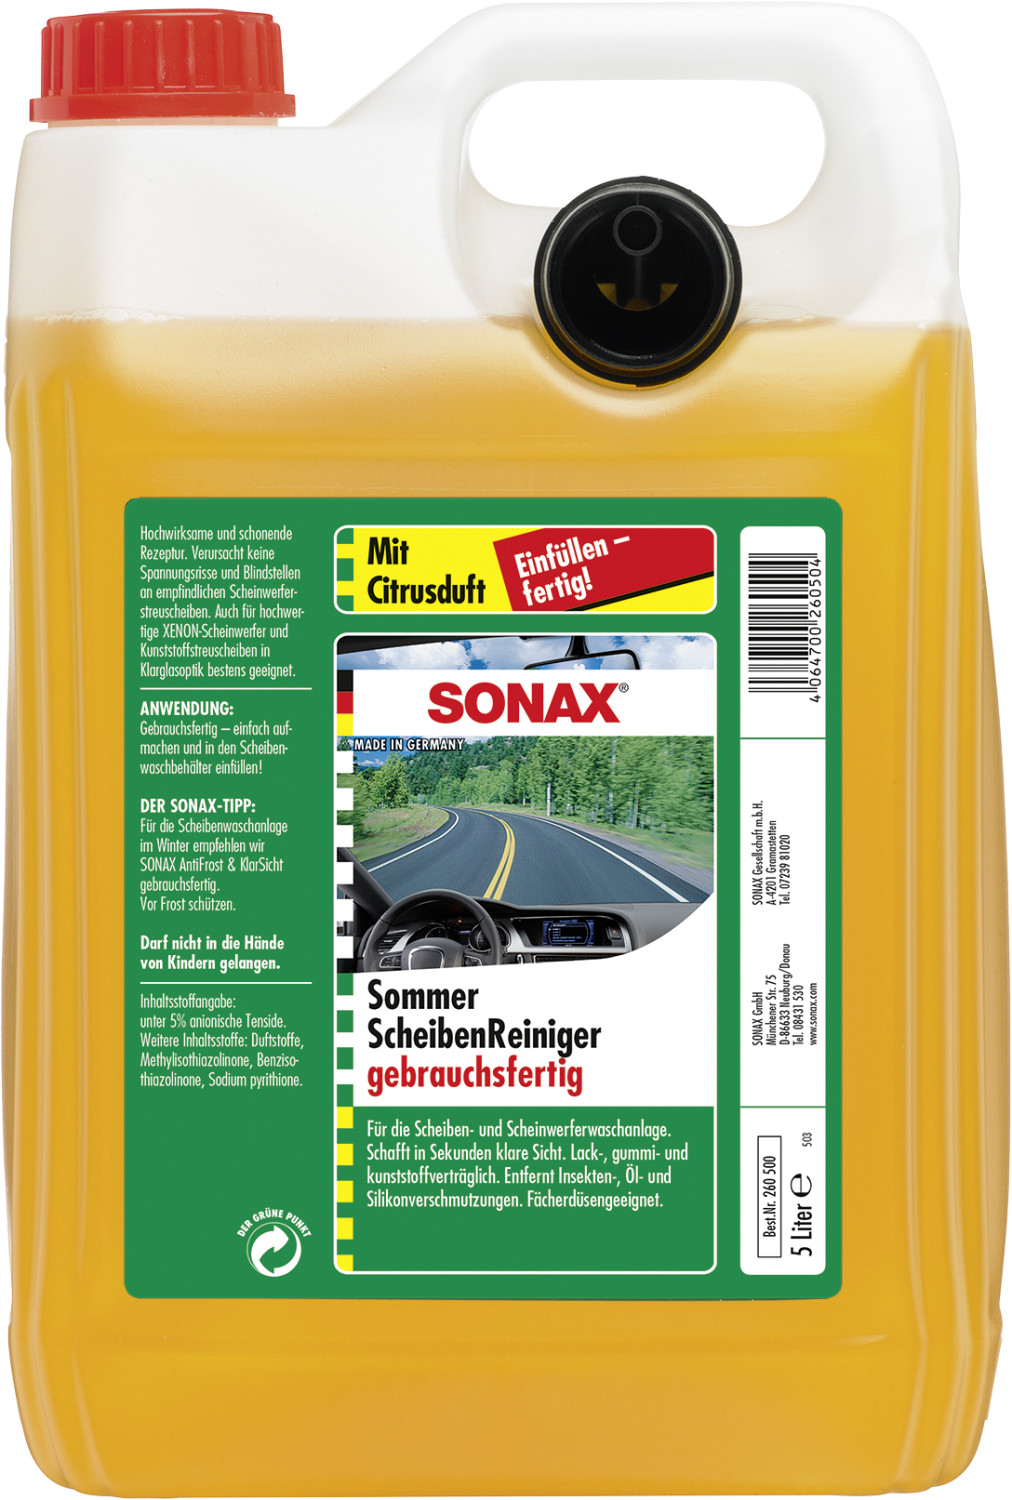 Sonax AntiFrost&KlarSicht Scheibenreiniger-Konzentrat Citrus 5L - Was,  21,96 €